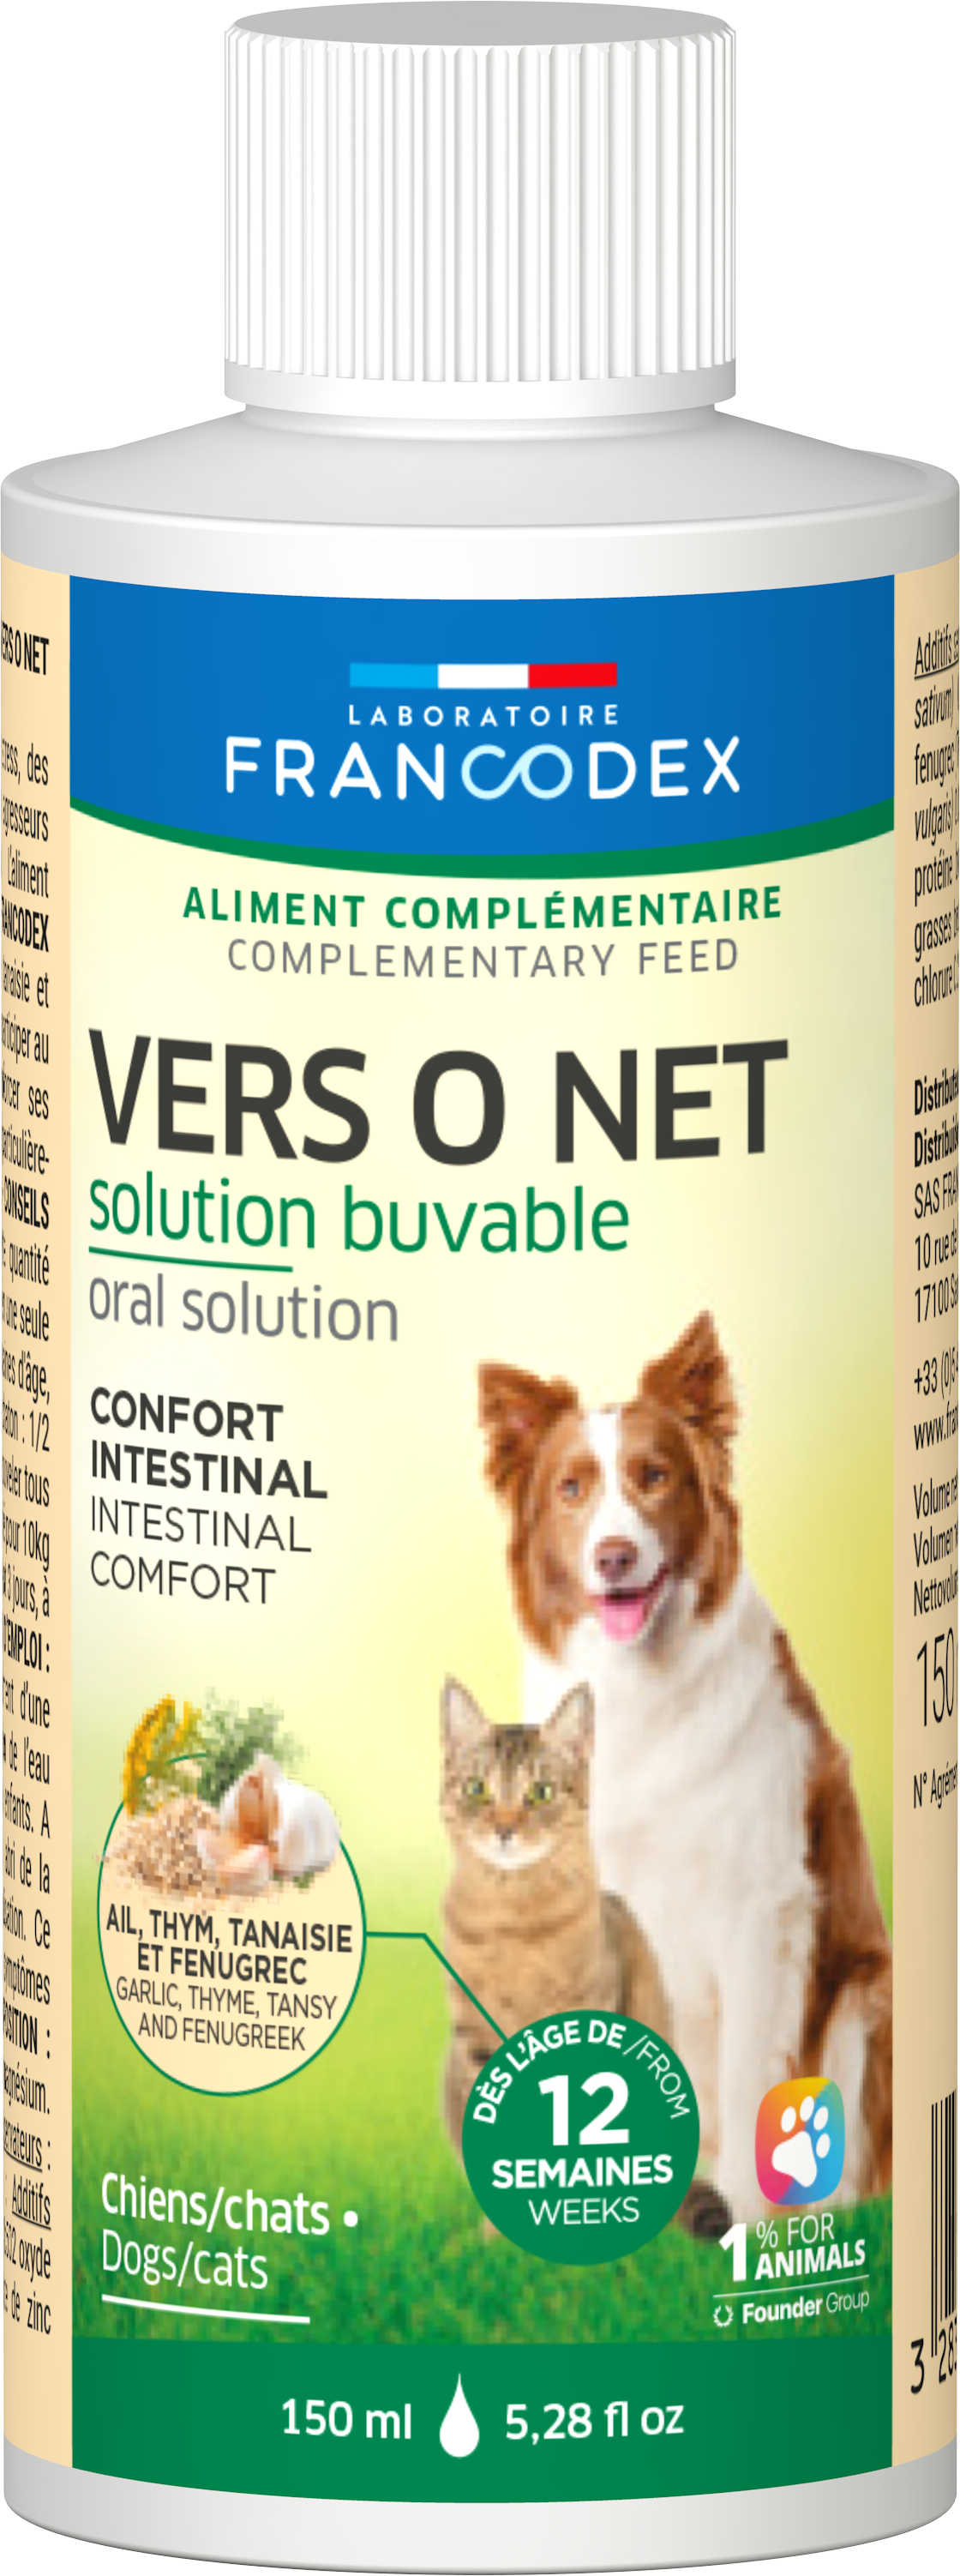 Francodex Vers o Net Soluzione bevibile per cane e gatto